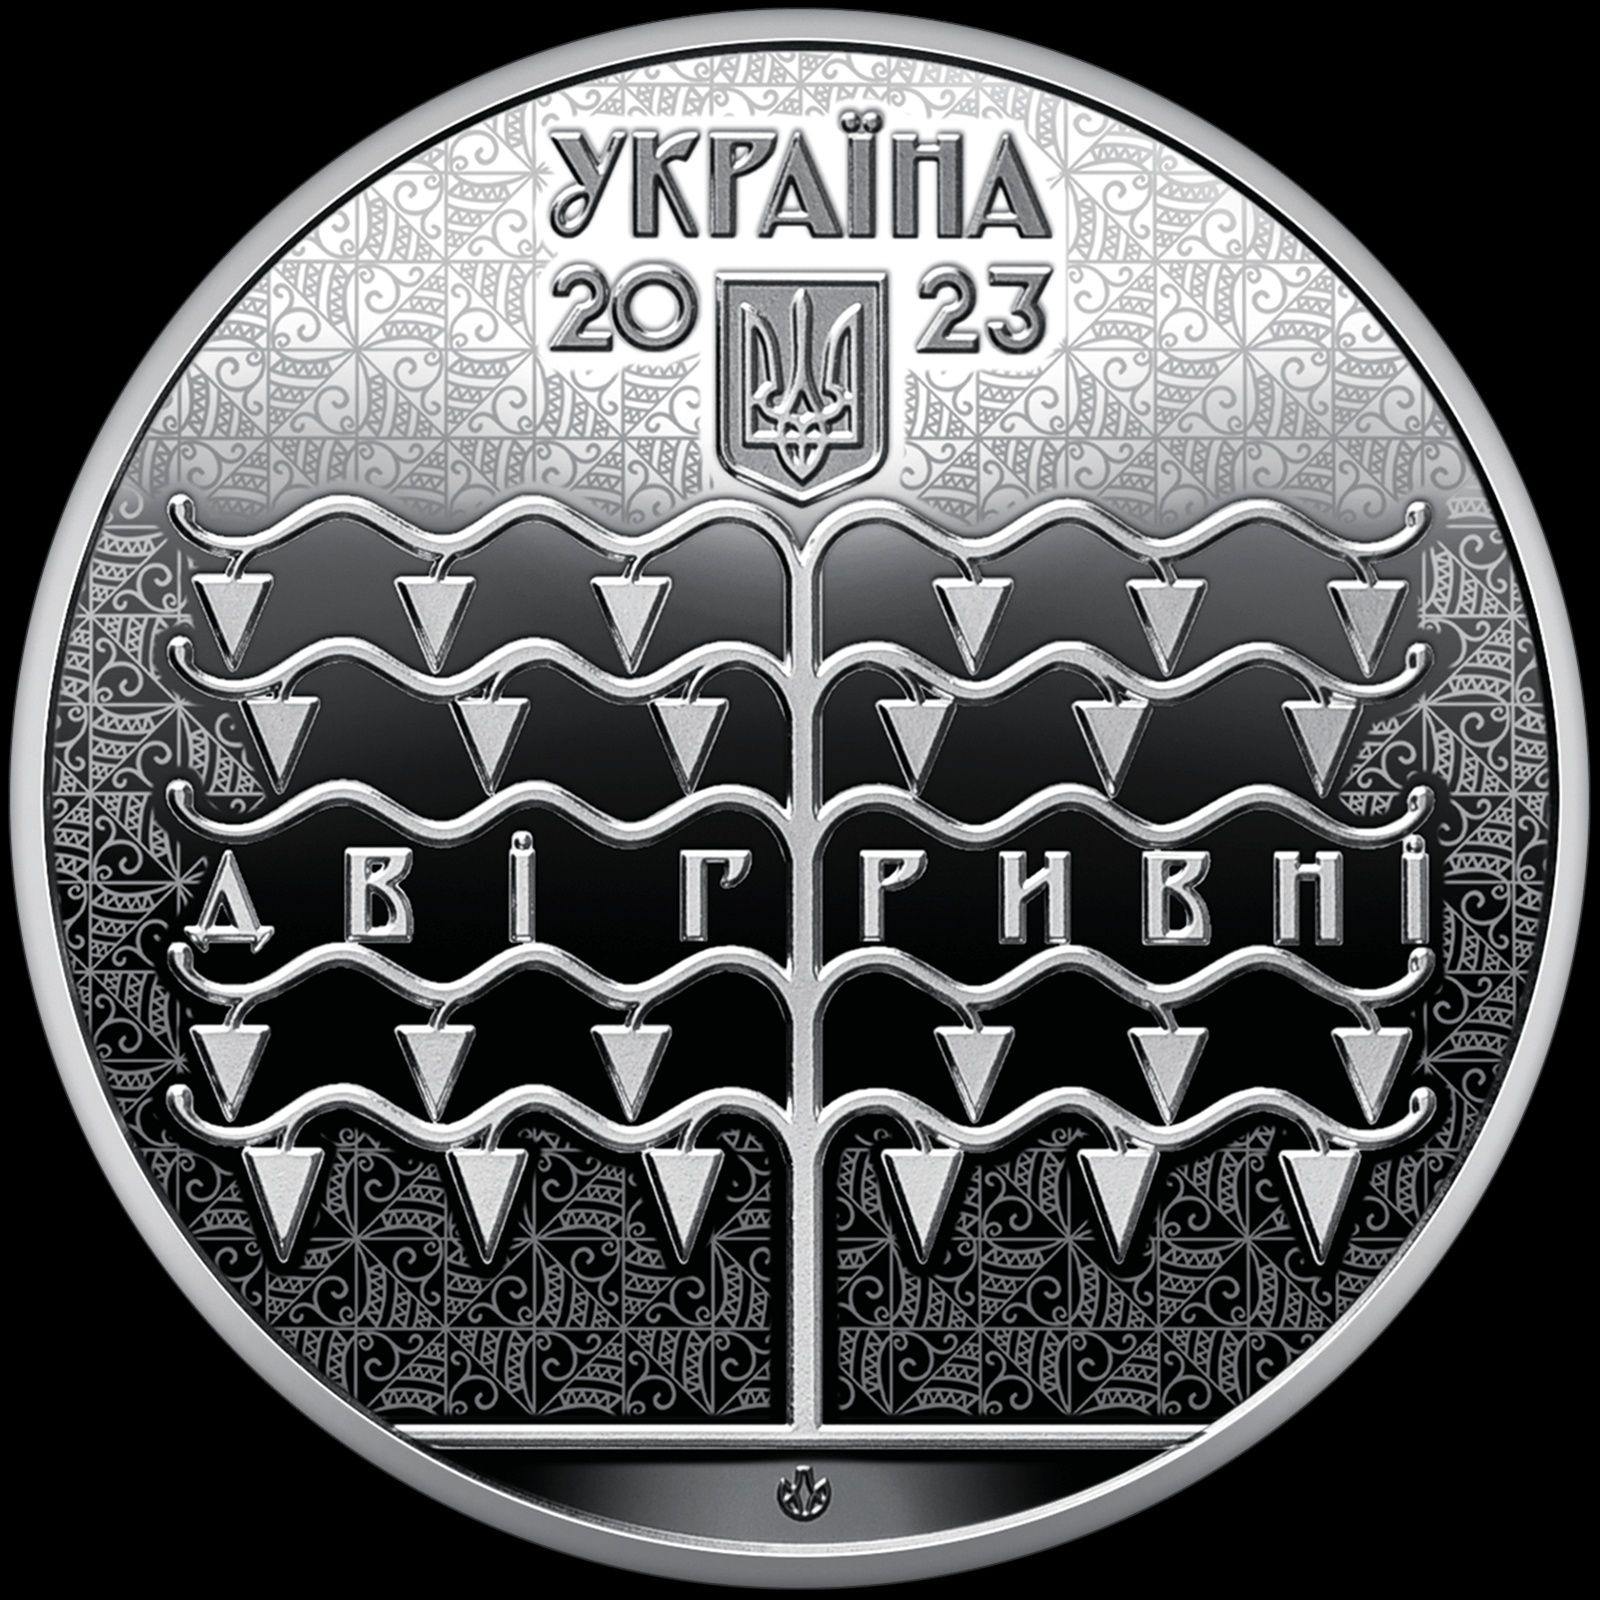 Пам’ятна монета "Василь Кричевський"